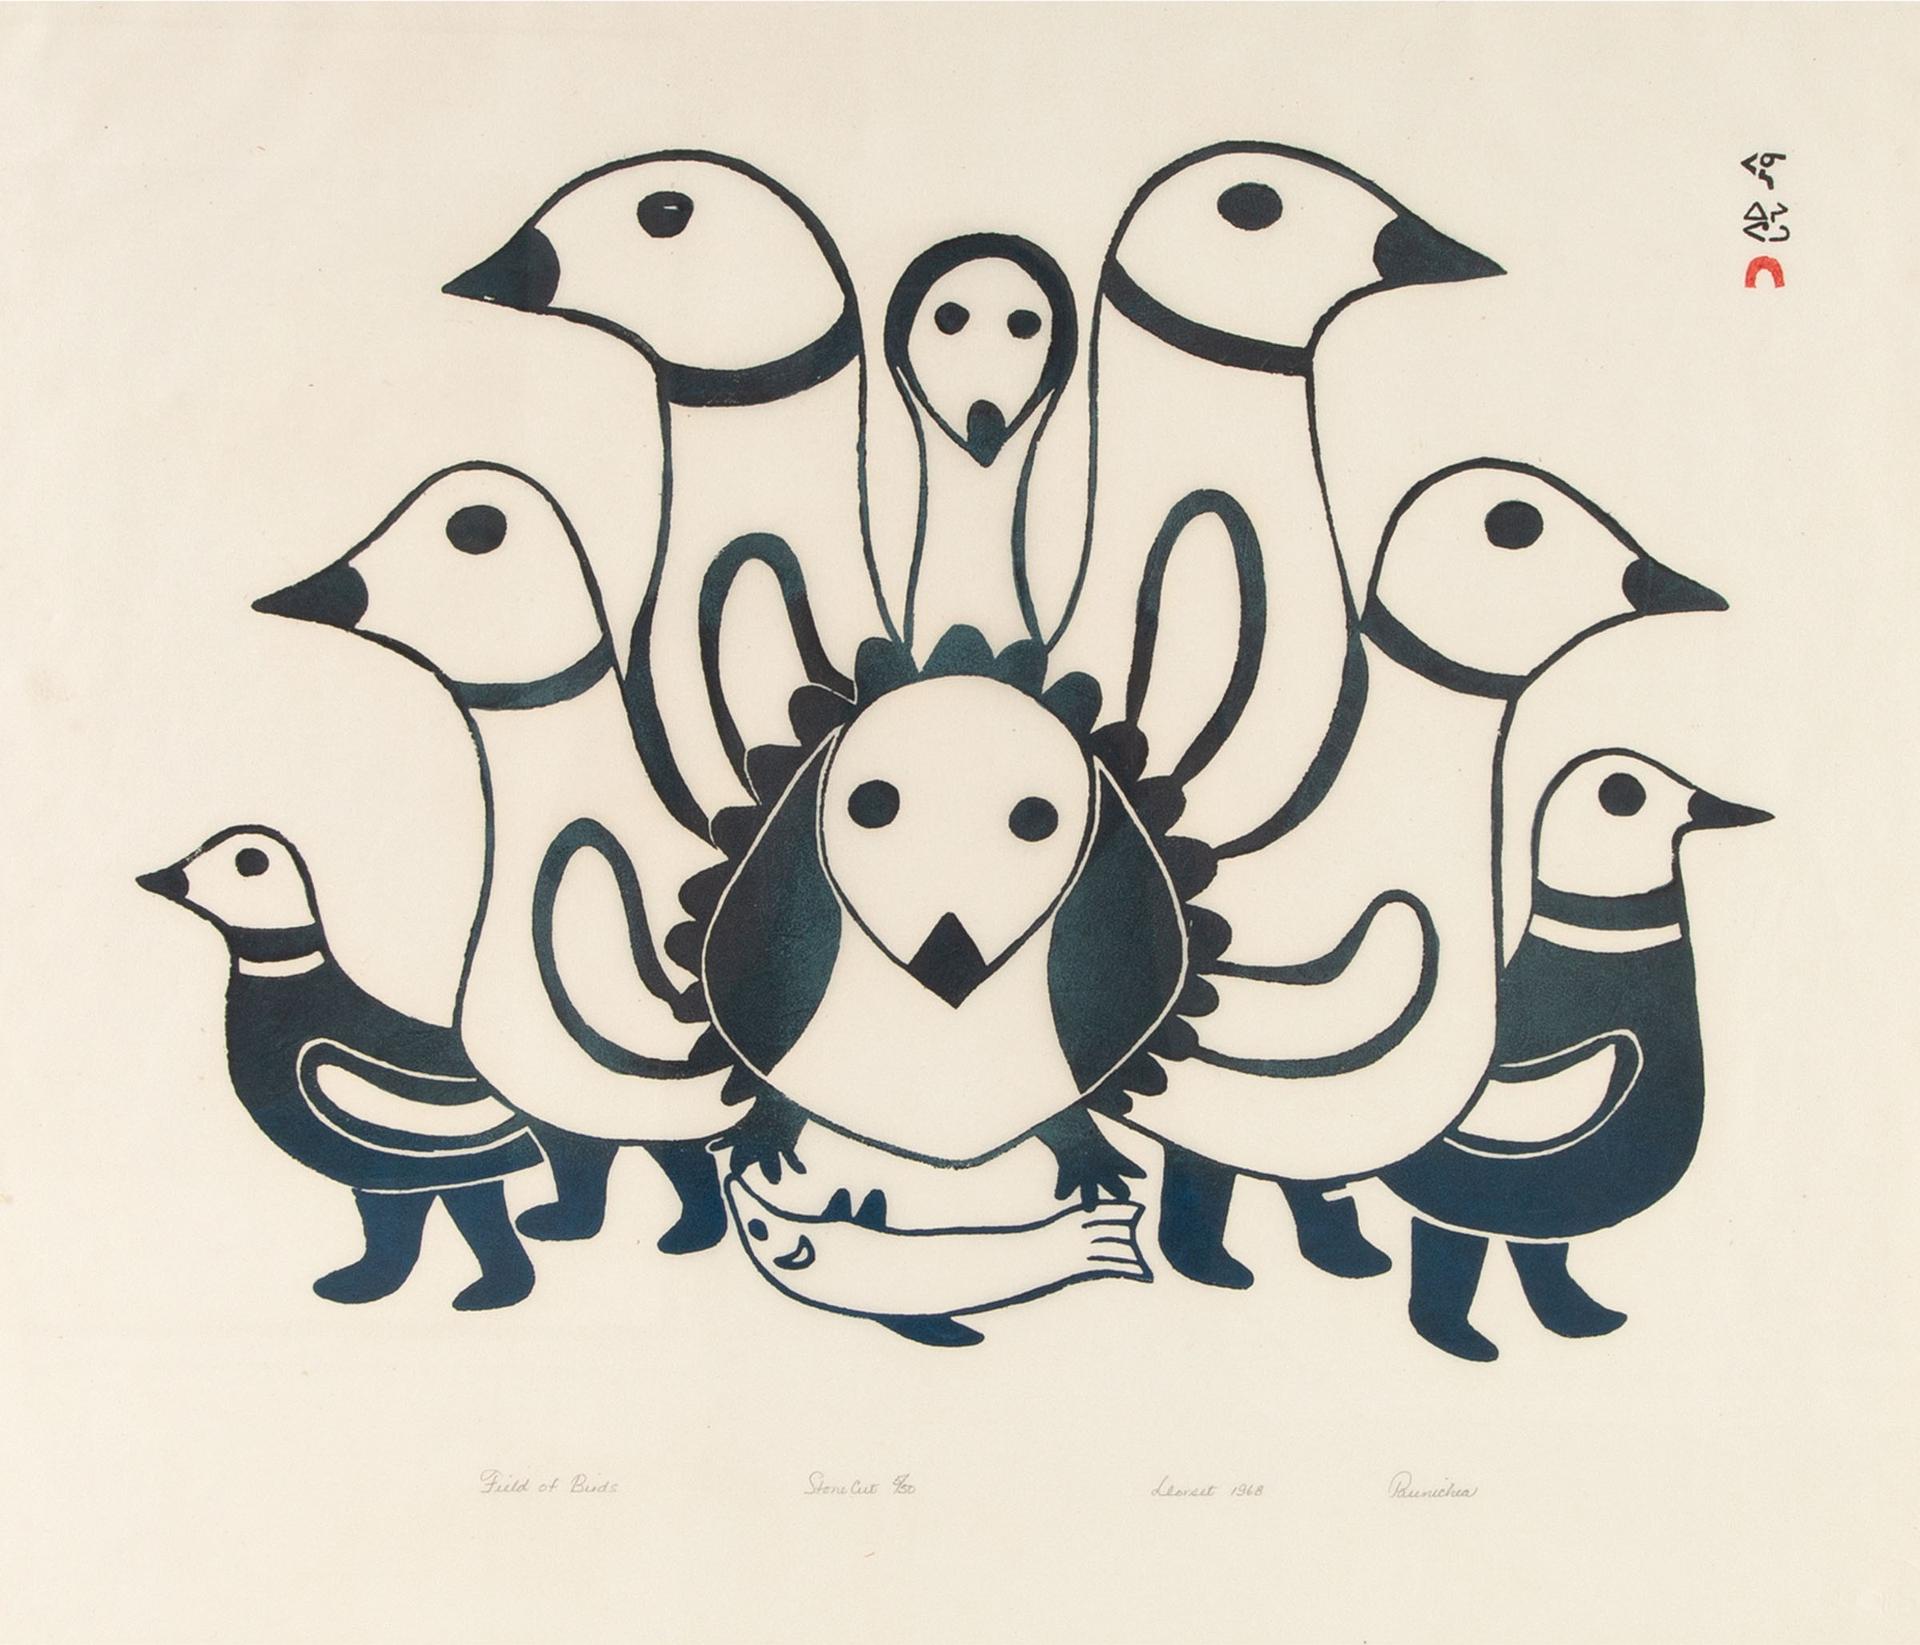 Paunichea (1920-1968) - Field Of Birds